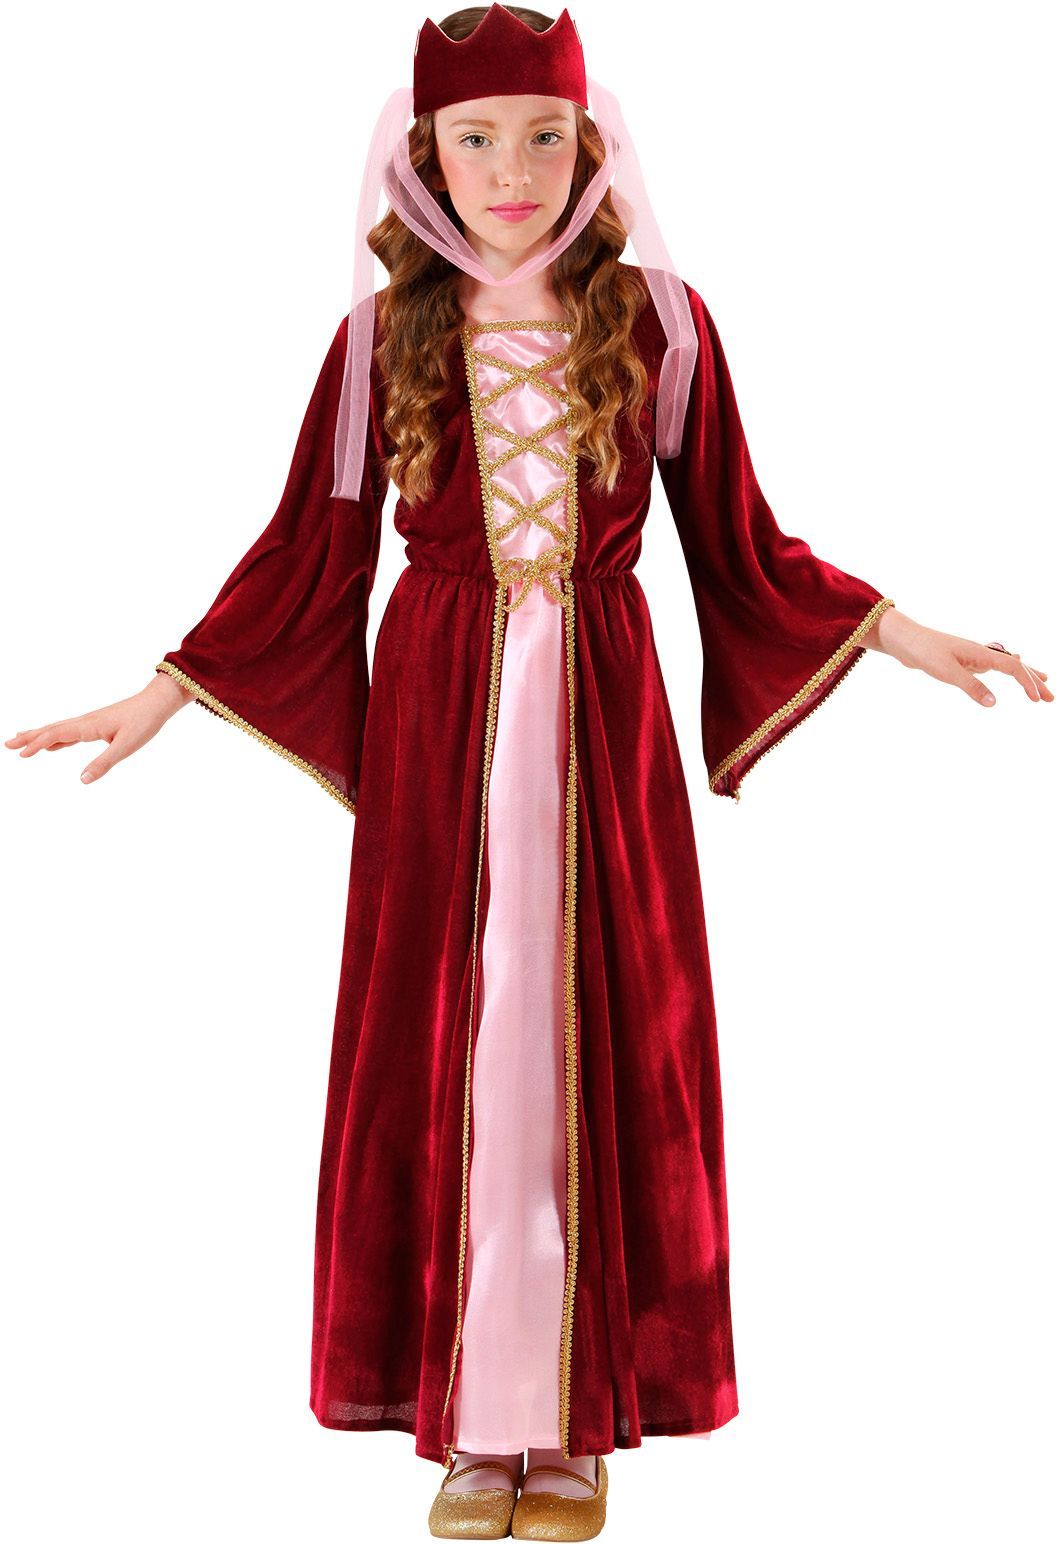 Rood middeleeuws jurk kind